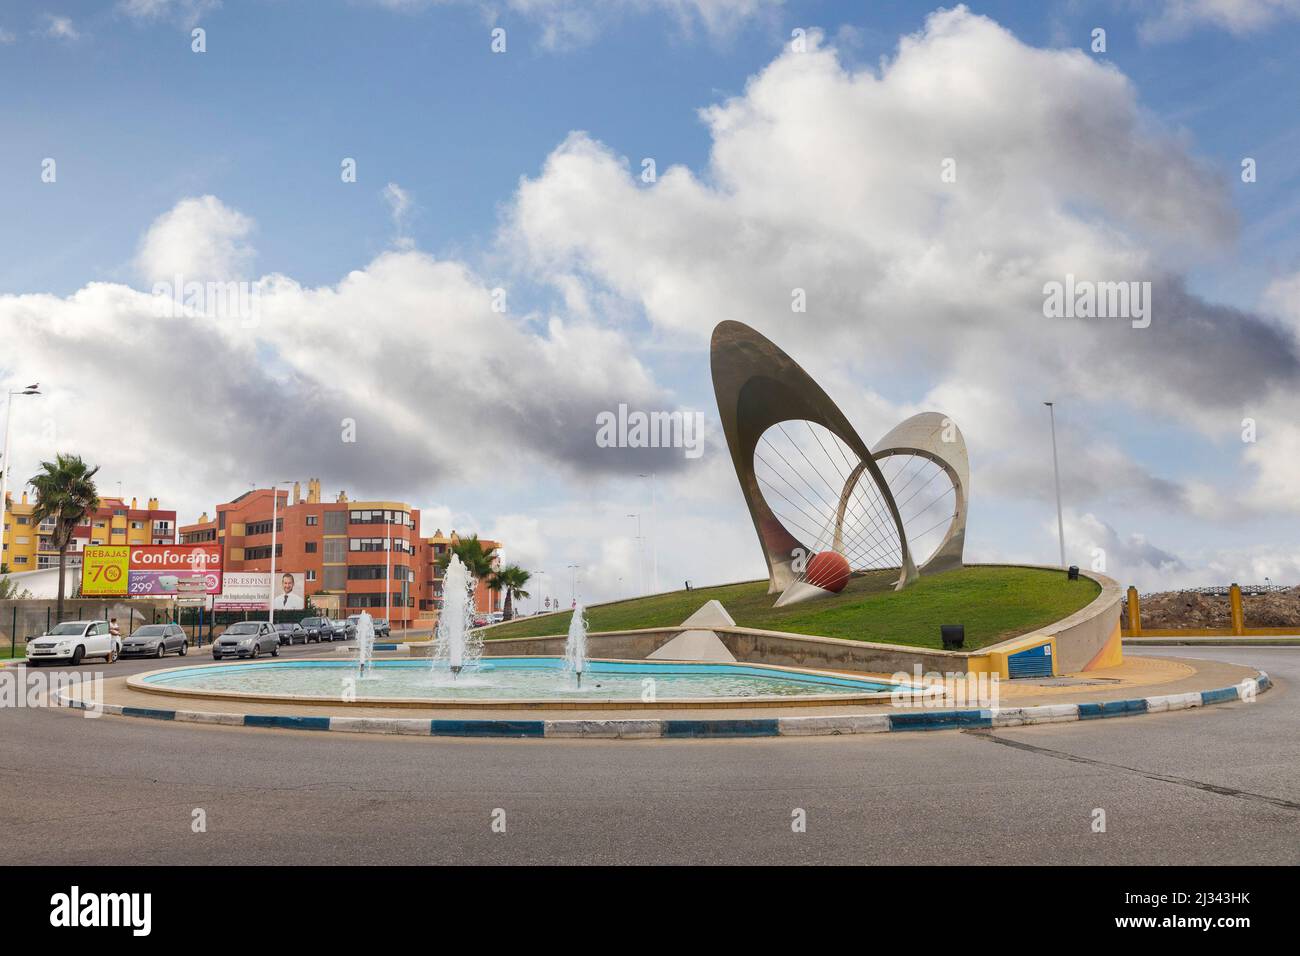 Artwork on roundabout, La Linea de la Concepcion, Spain Stock Photo